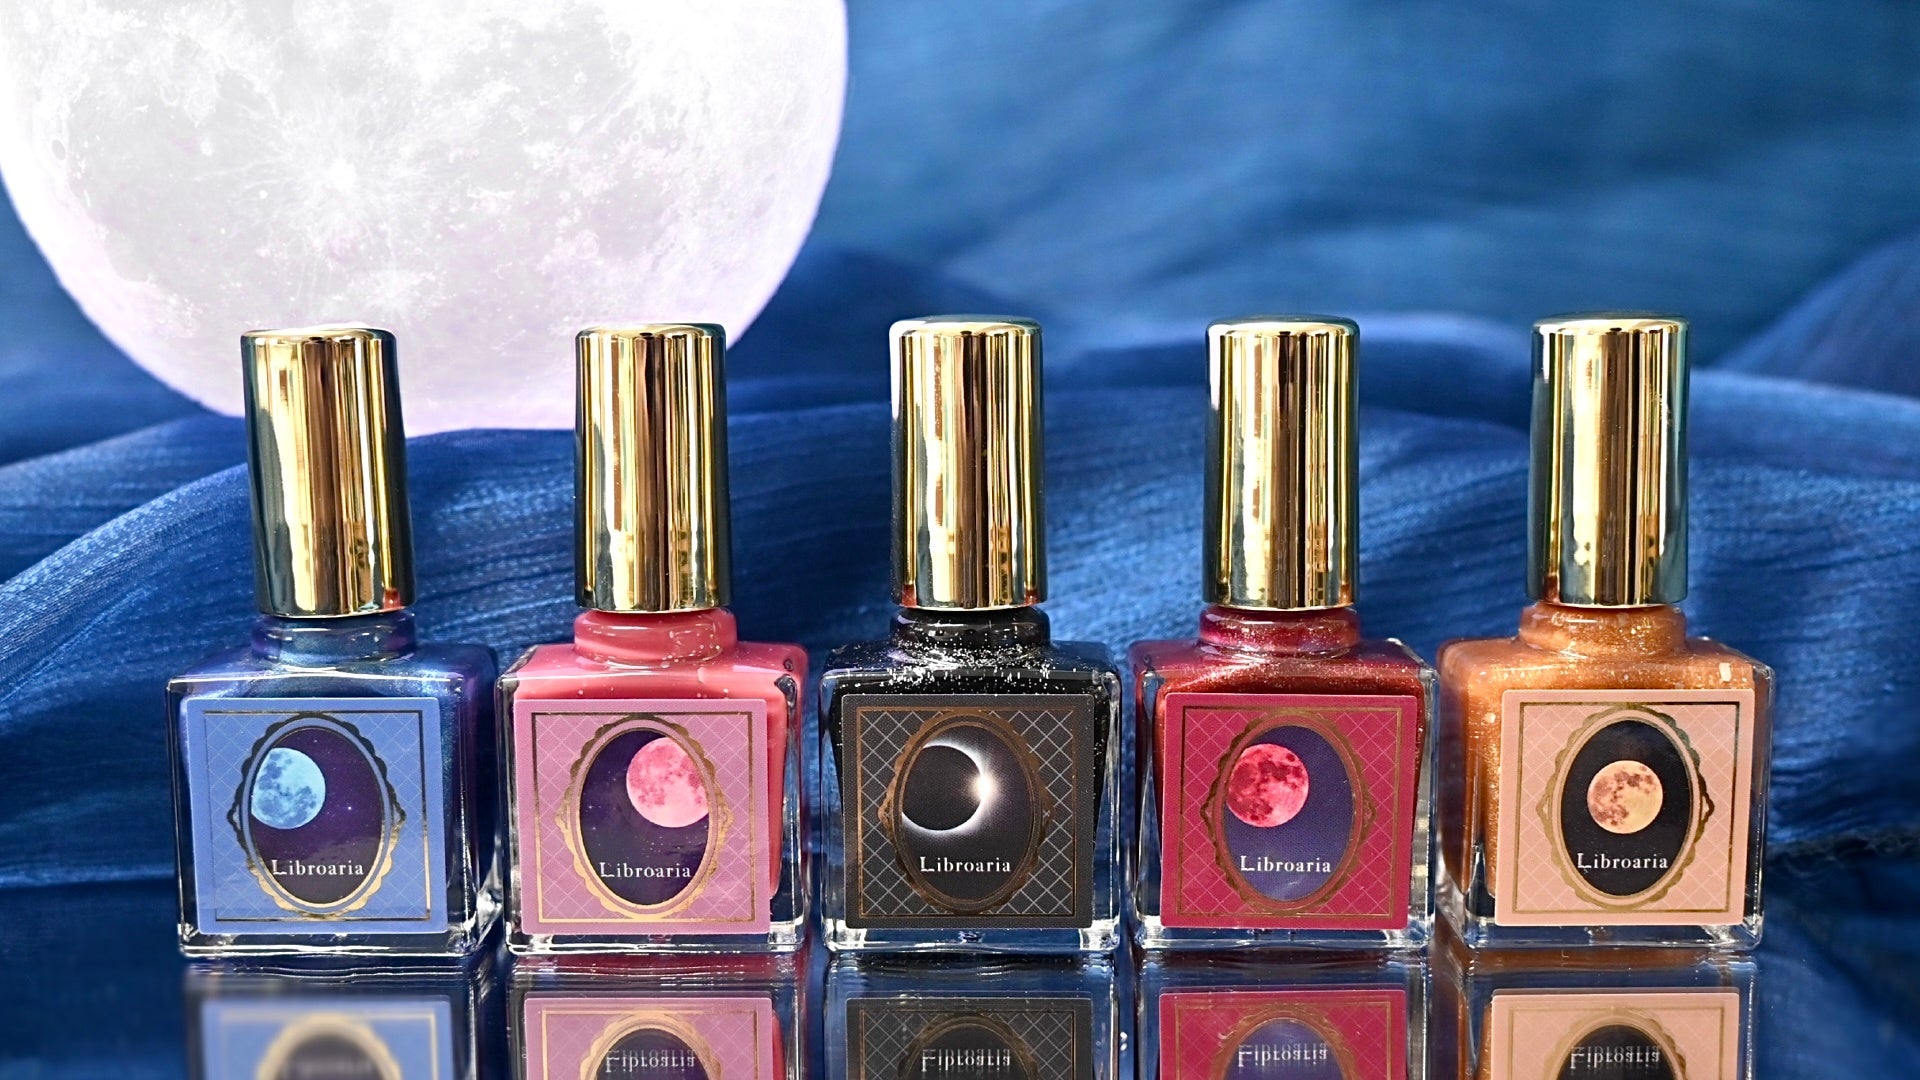 出版社生まれのコスメブランド「Libroaria」(リブロアリア)から、「月の輝き」にインスパイアされたネイルポリッシュ、Moon Collectionが登場。神秘的な輝きを放つ5種のカラー。